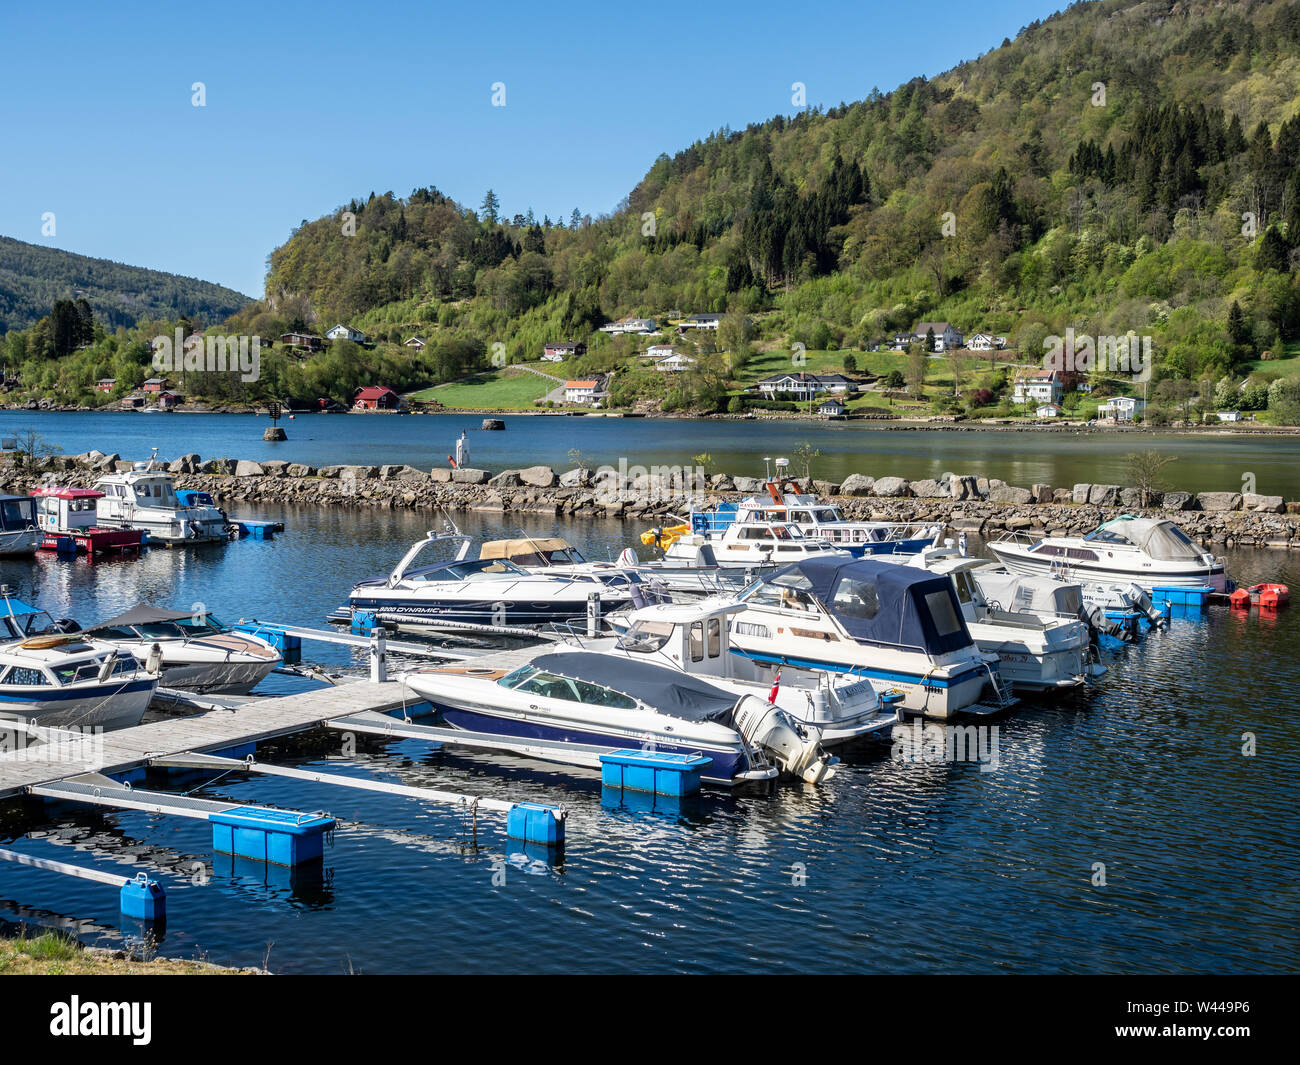 Bateaux de loisirs au village, rivière Feda Feda au Fedafjord, côte sud, fjordland, Norvège Banque D'Images